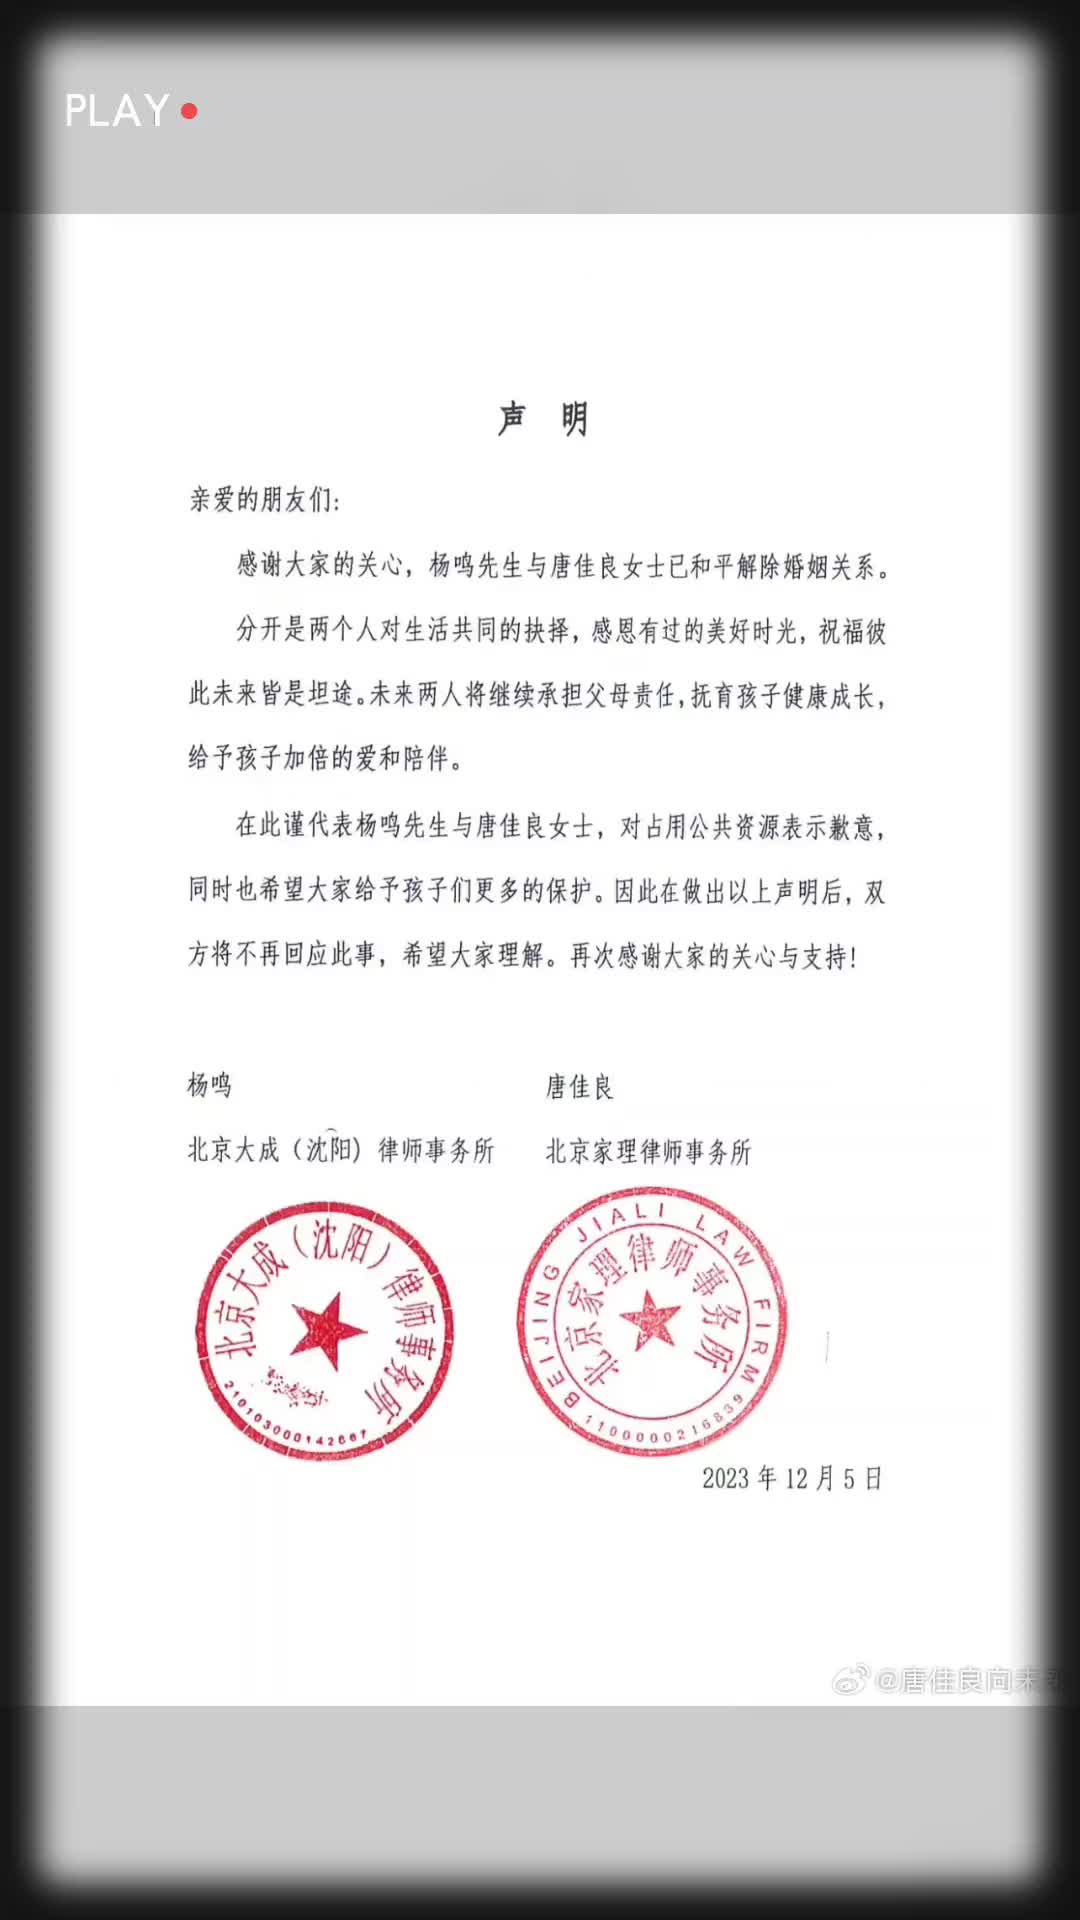  杨鸣与唐佳良发布共同声明，宣布已经和平解除婚姻关系